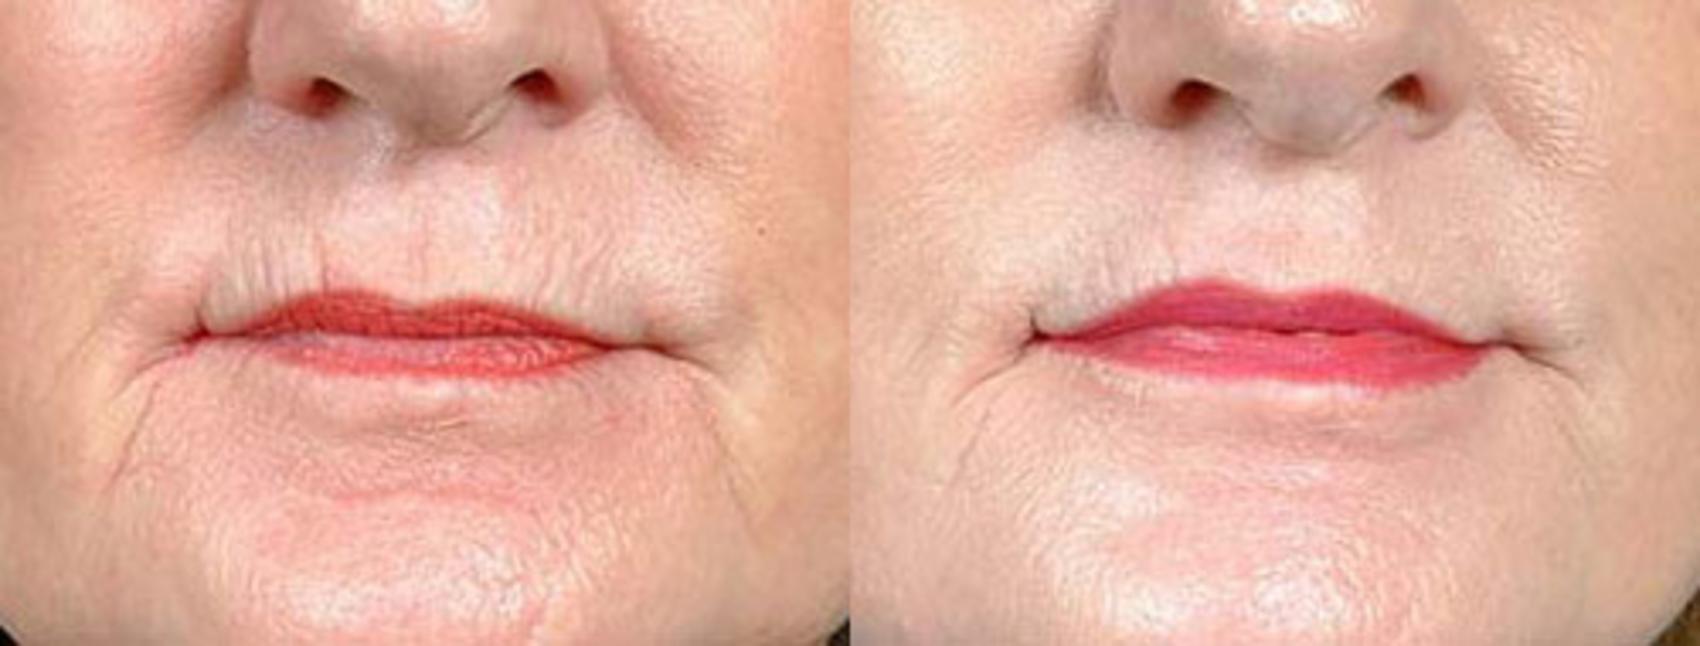 Lip Implants Case 96 Before & After View #1 | Louisville, KY | CaloSpa® Rejuvenation Center